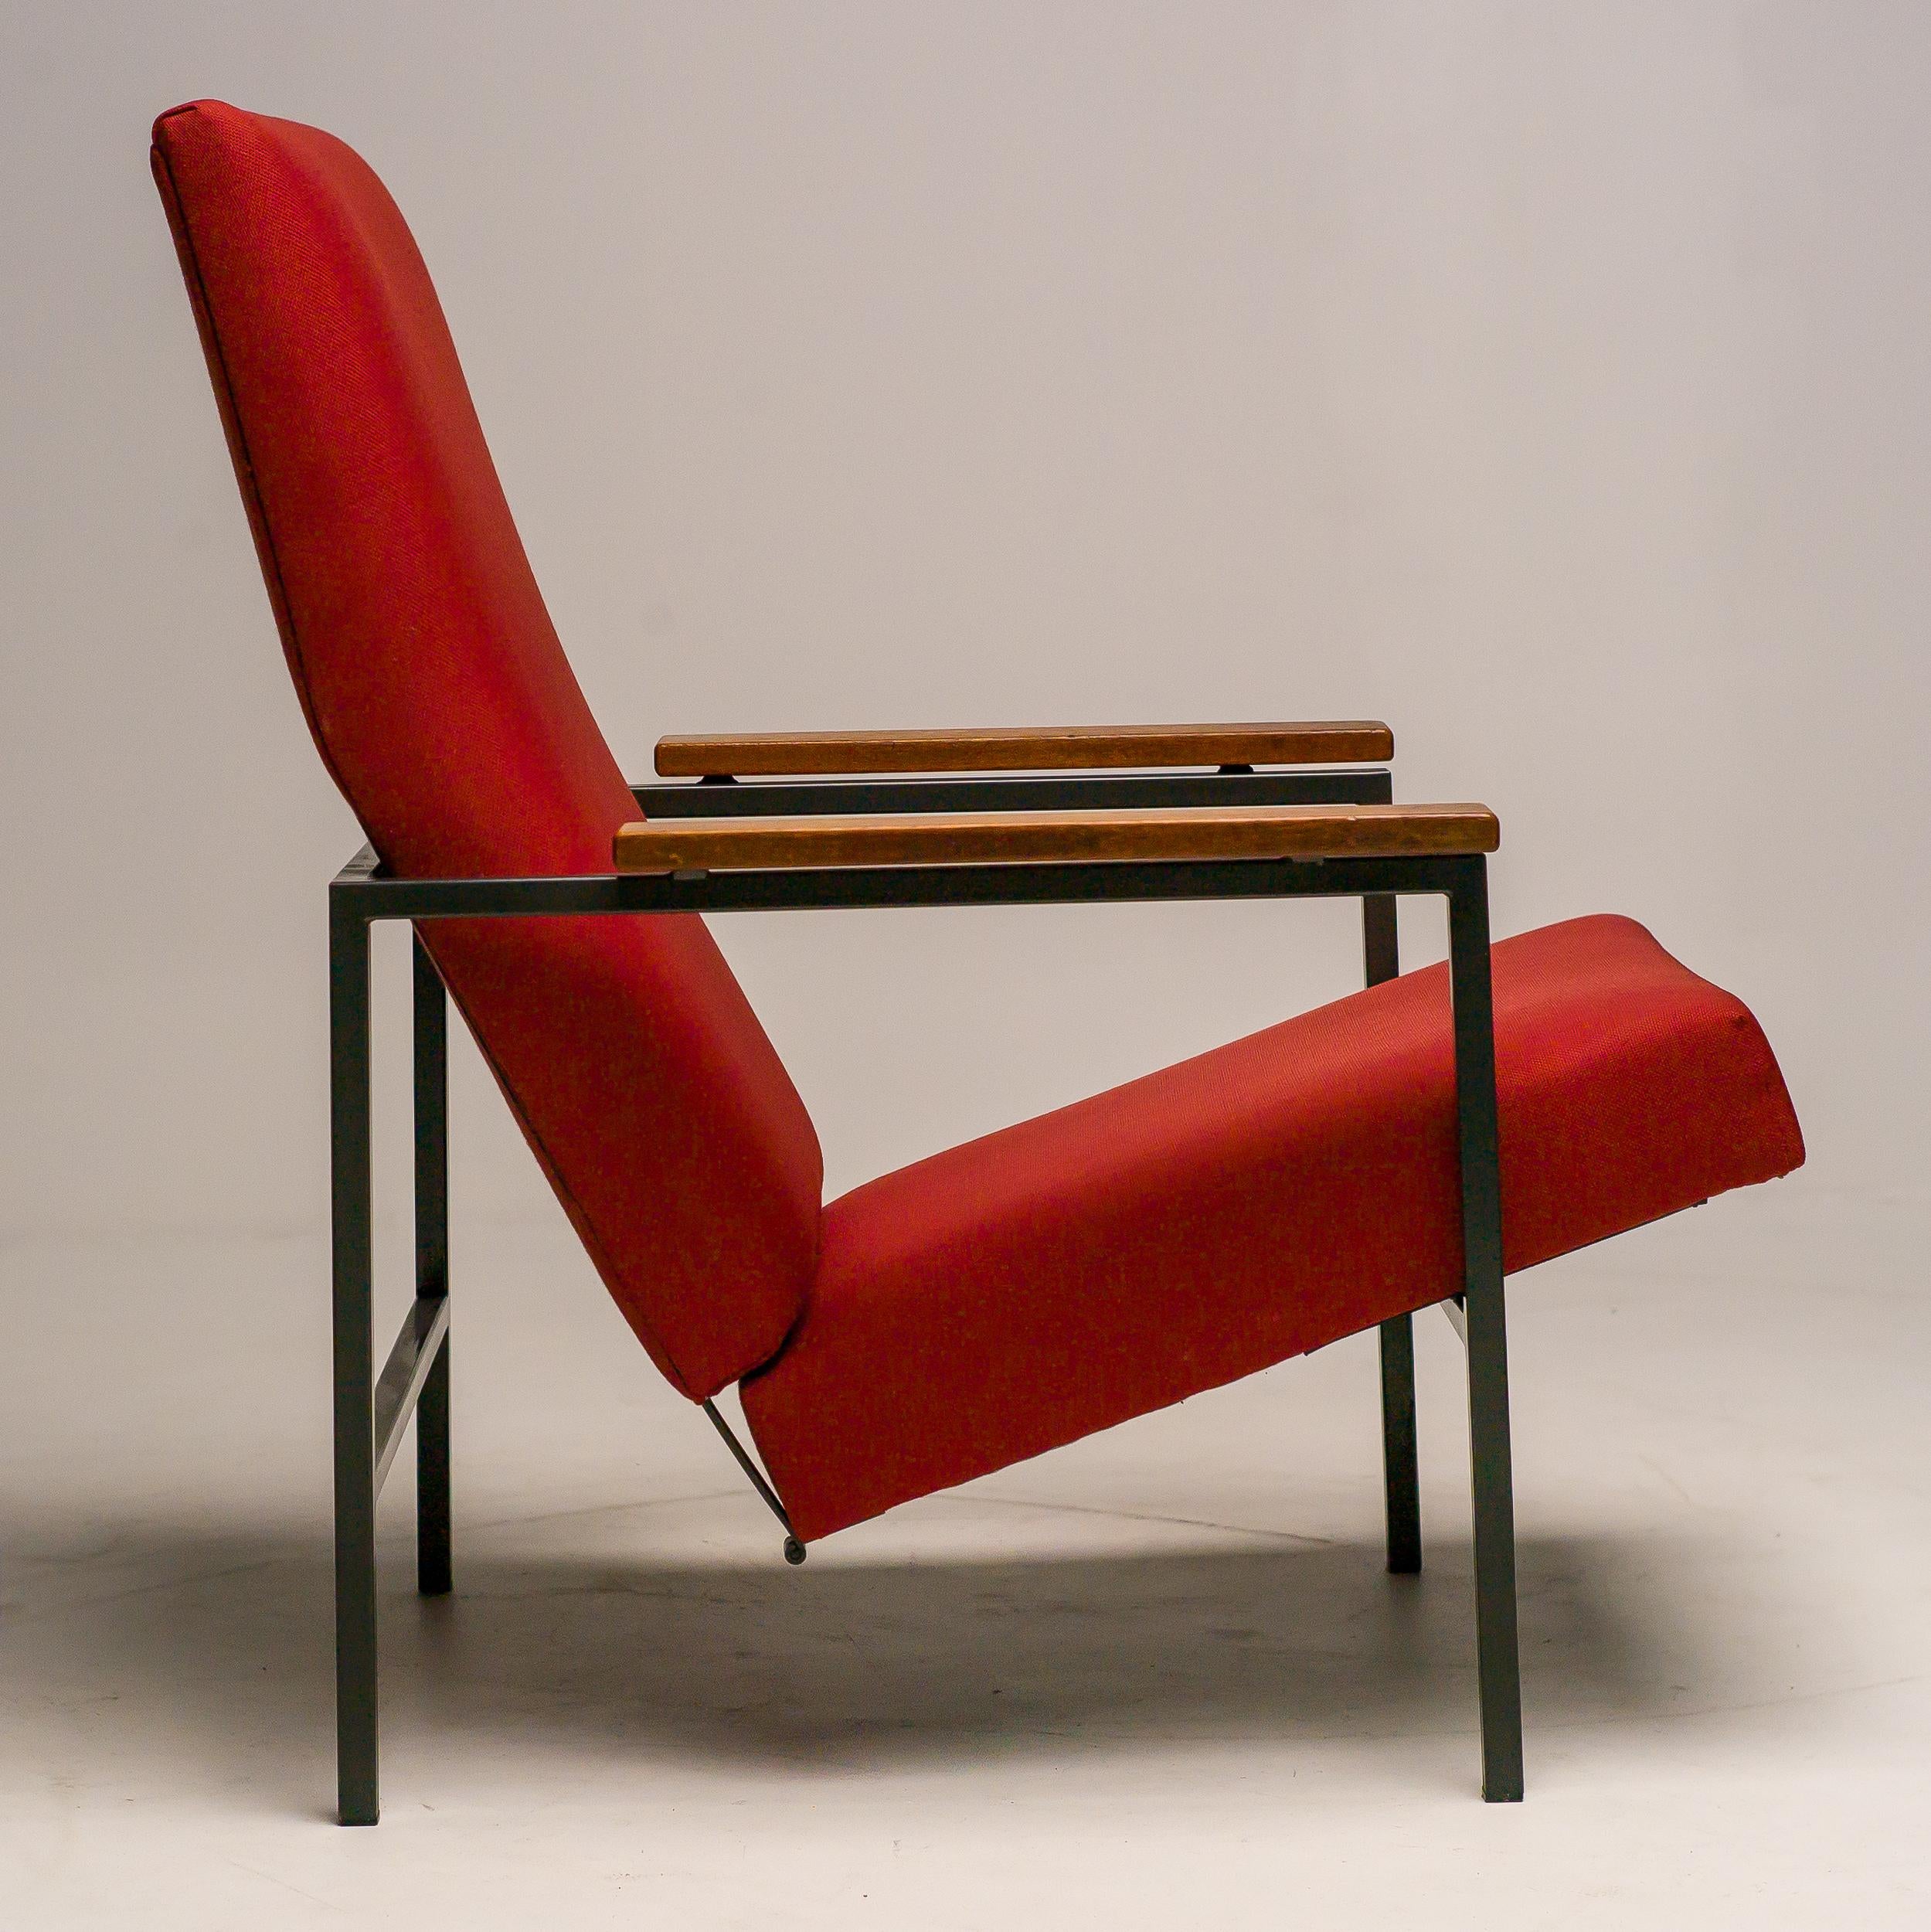 Chaise longue inclinable Lotus conçue par Rob Parry pour Gelderland.
Rob Parry (La Haye, 1925-2023) a fait ses études à l'Académie royale des arts de La Haye. Ses principaux professeurs ont été CORS, Paul Schuitema et Gerrit Rietveld, au bureau